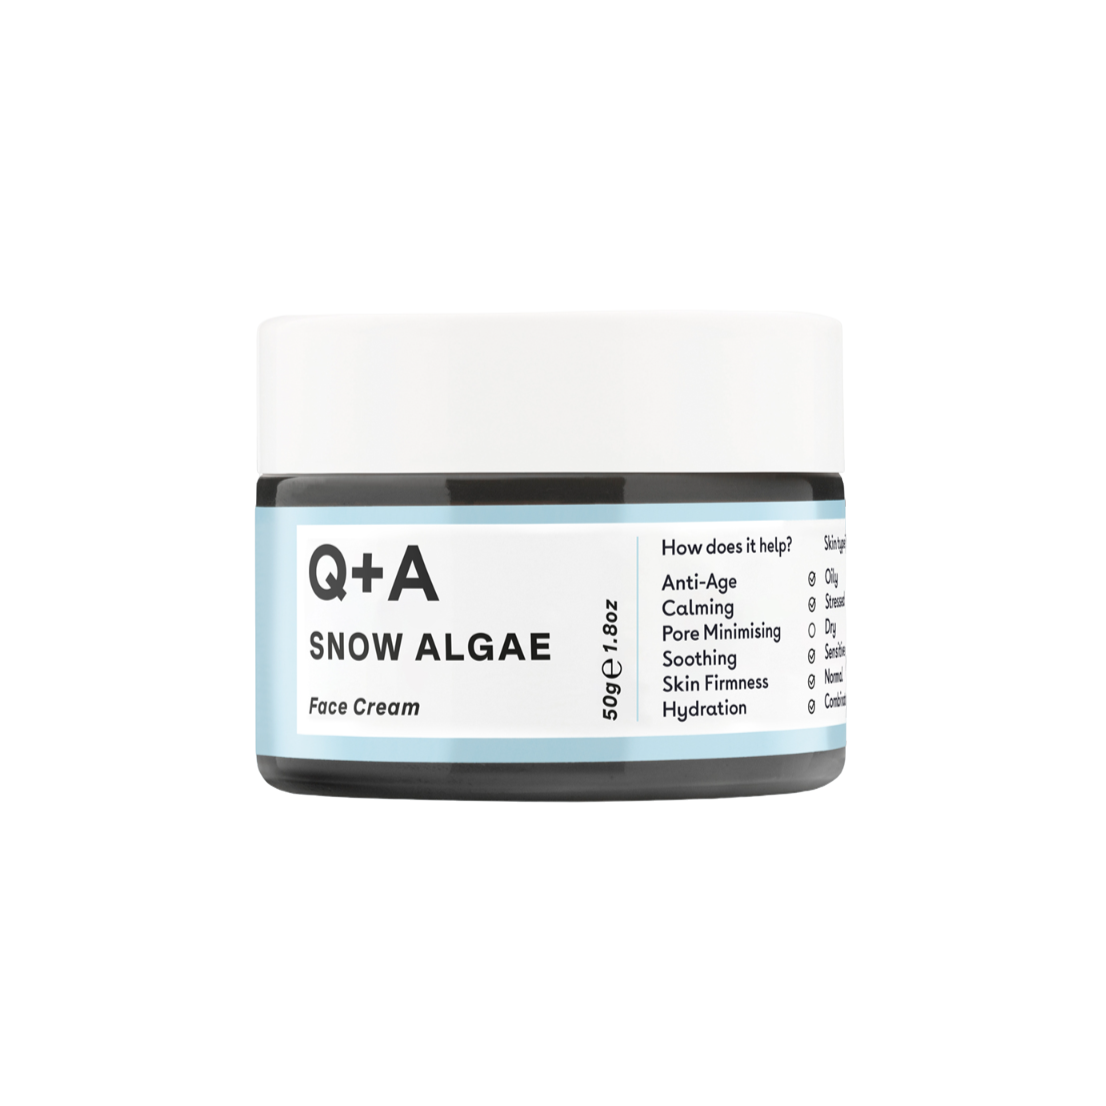 Q+A Snow Algae Intensive Face Cream 50g - интернет-магазин профессиональной косметики Spadream, изображение 52177